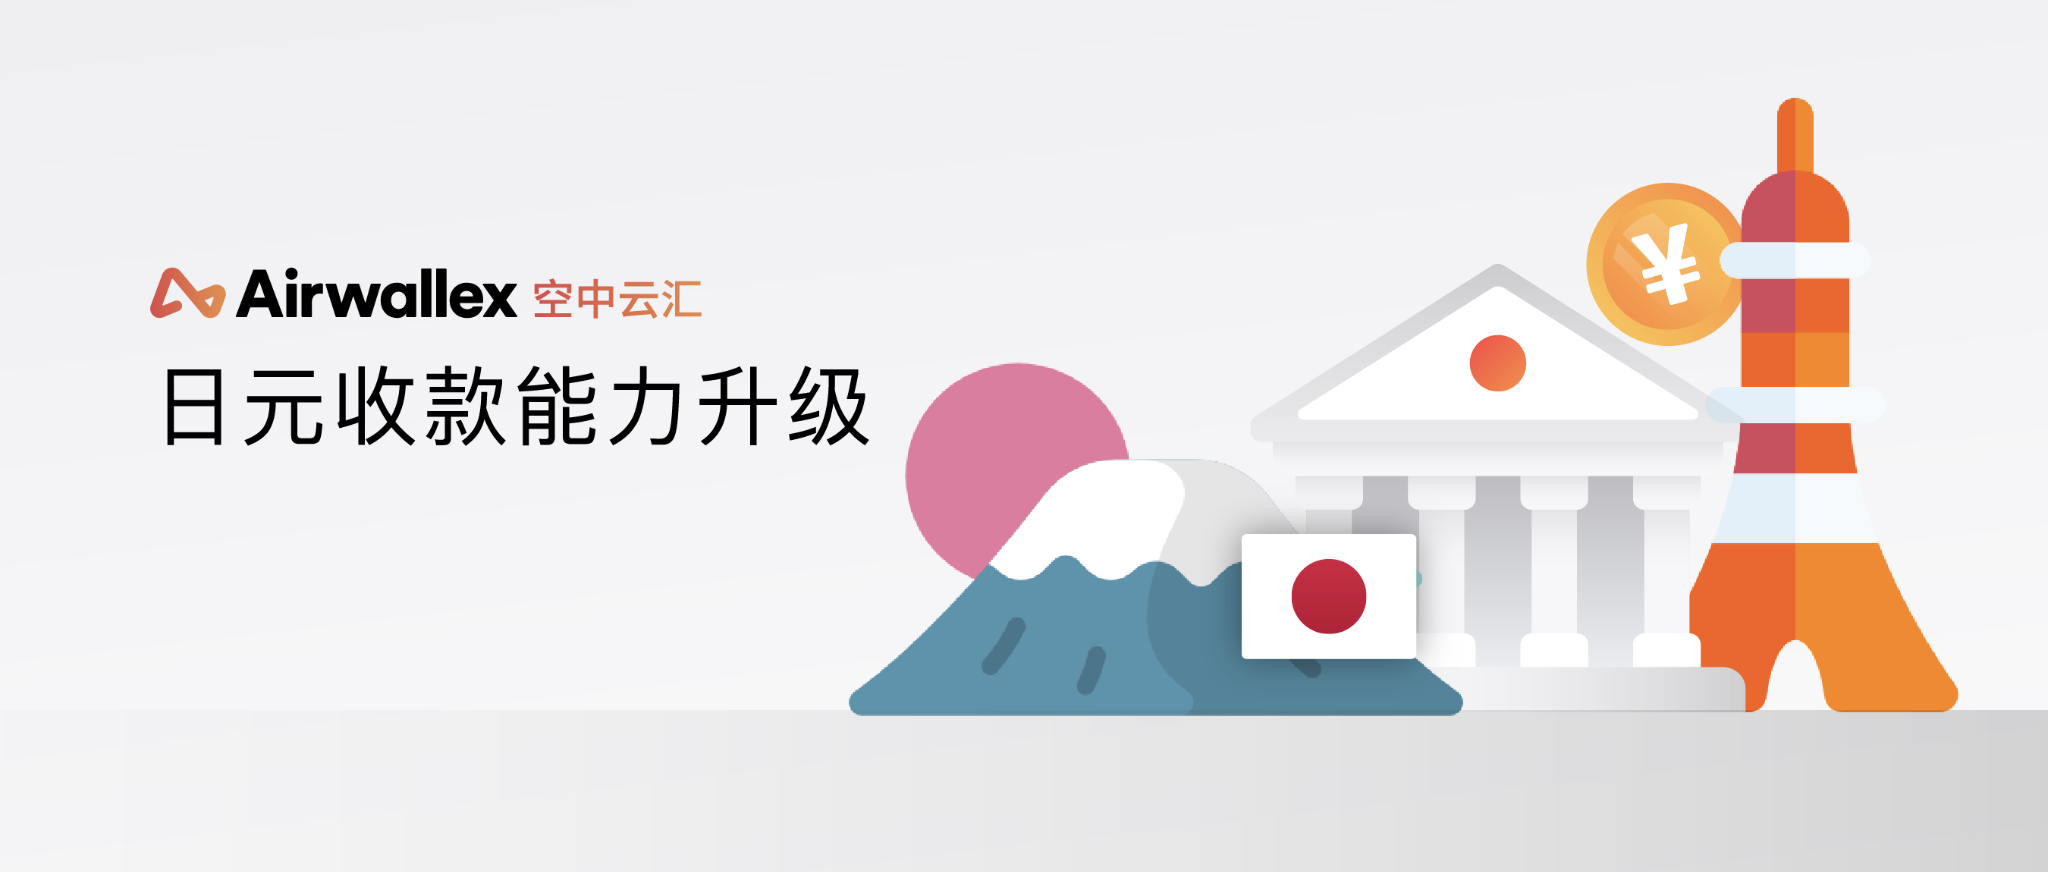 更快更优的日元收款,Airwallex空中云汇全球账户日元收款能力升级!